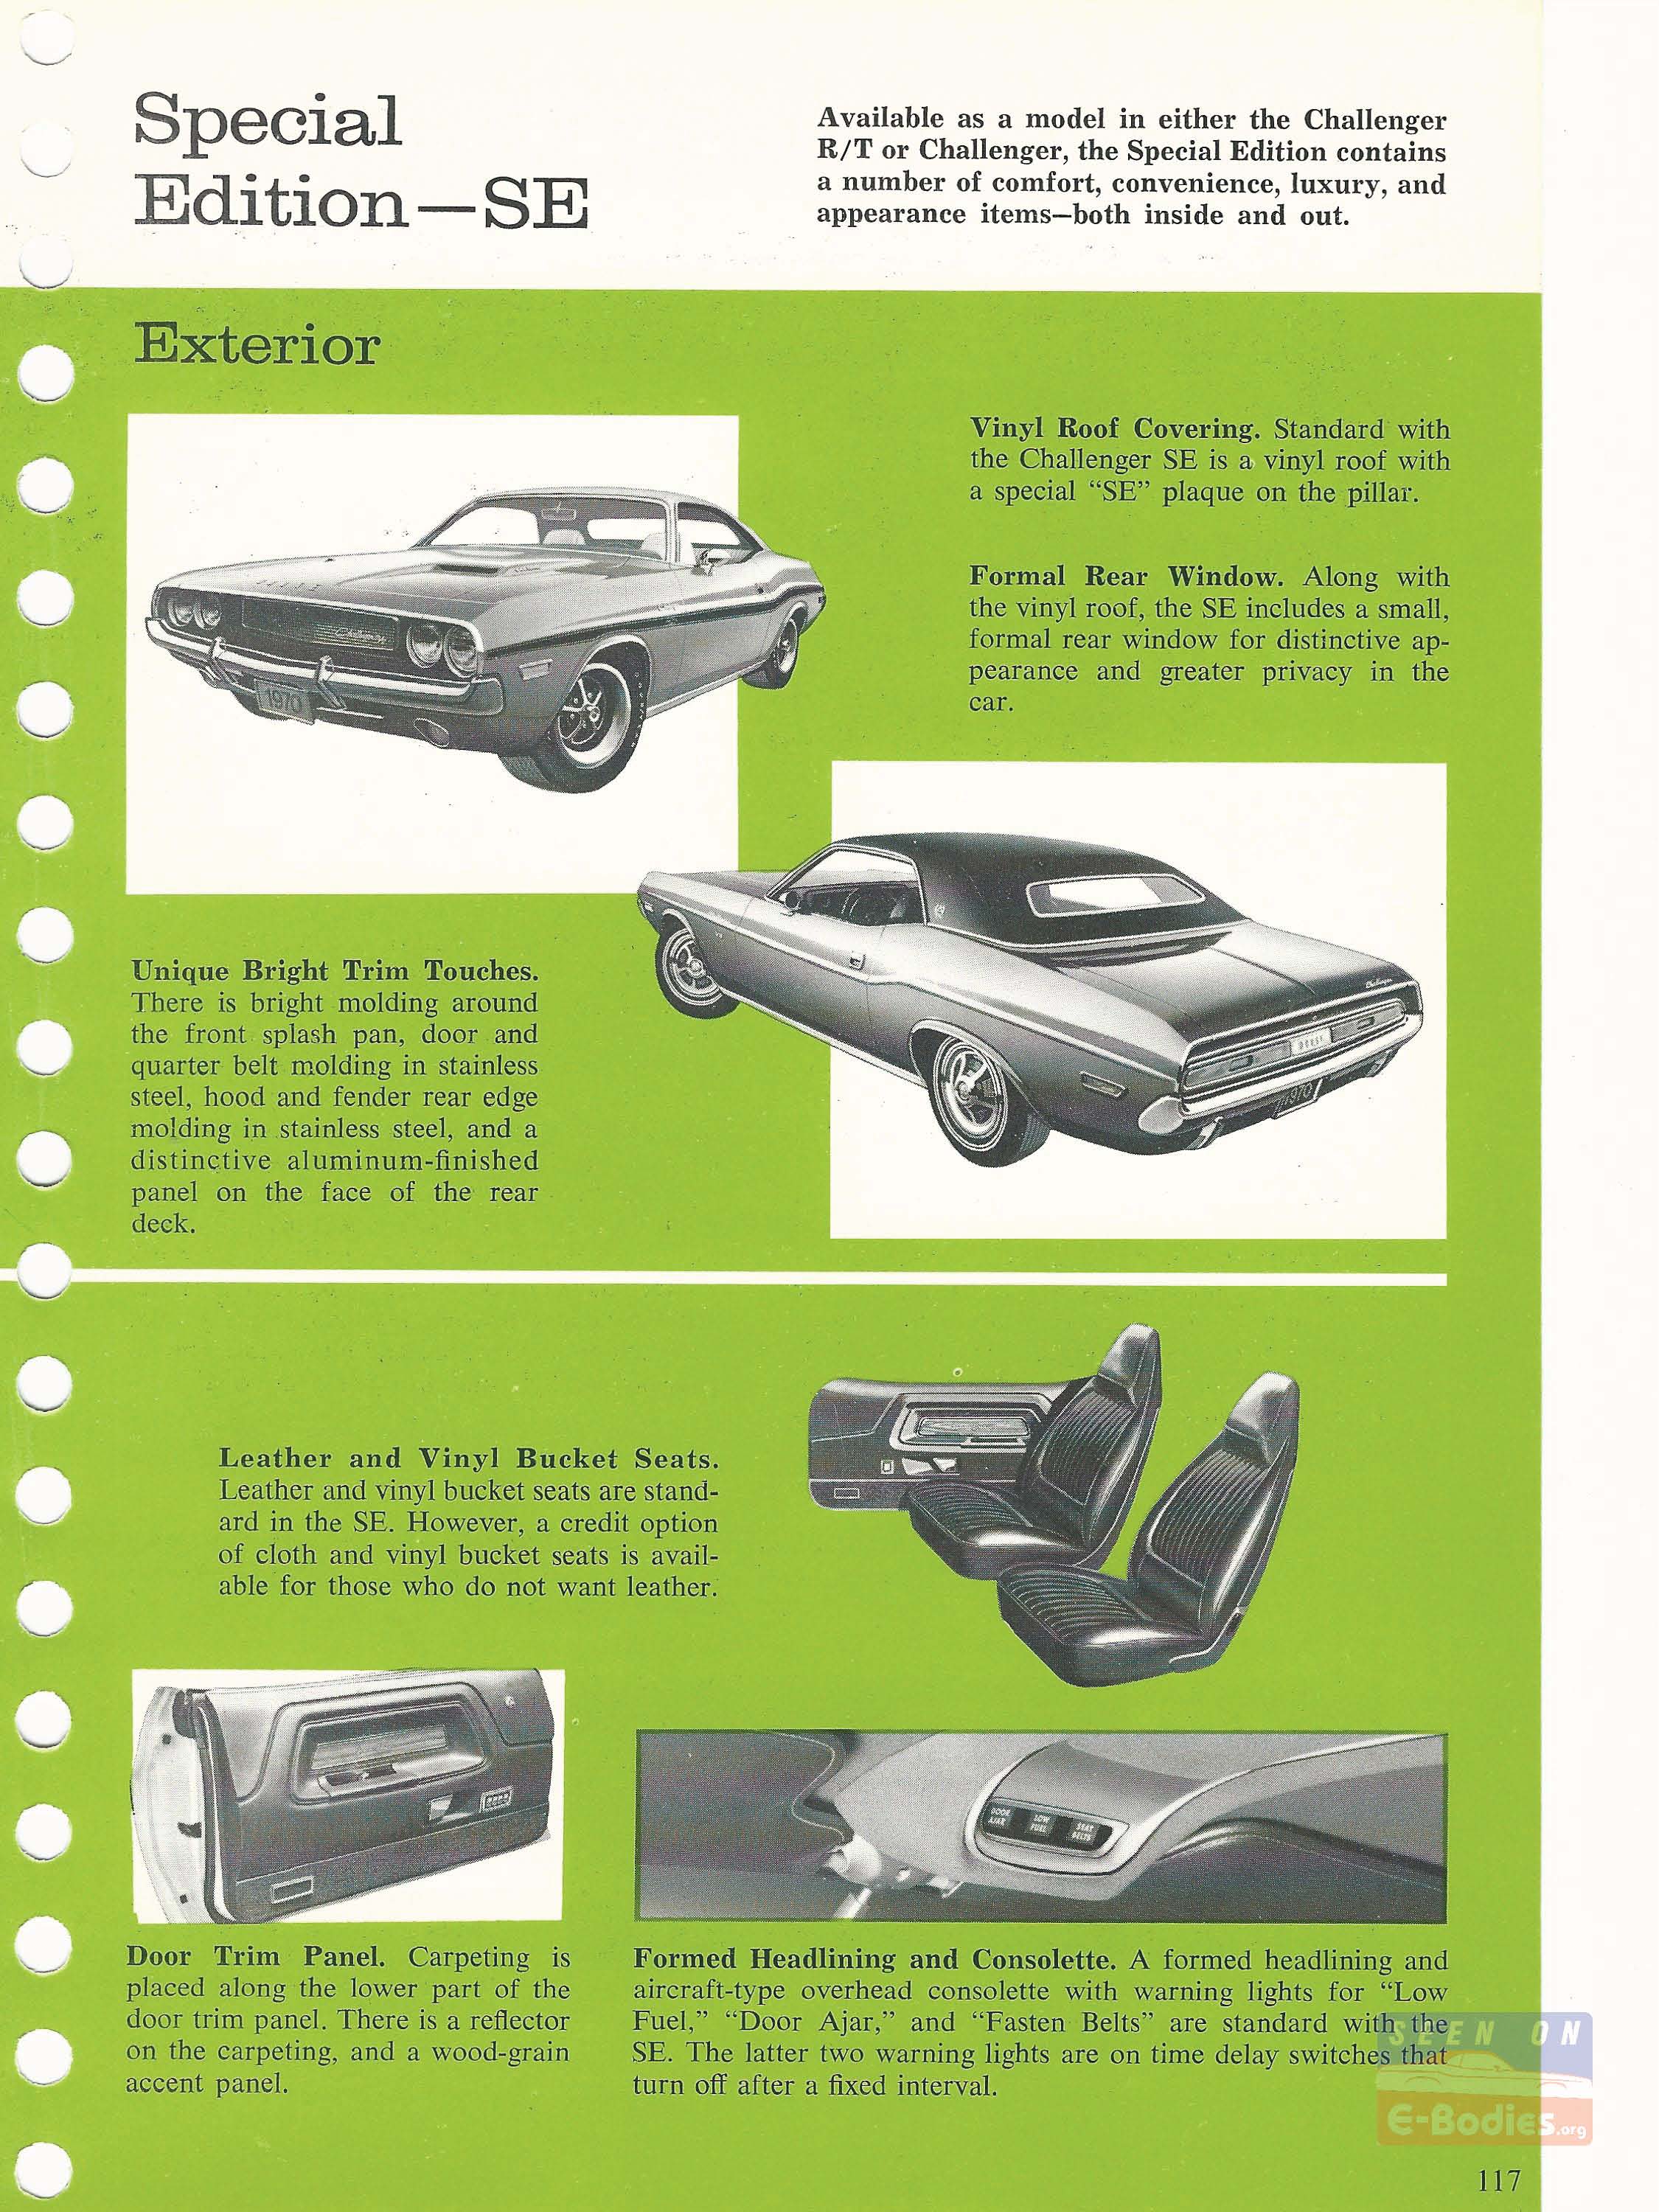 Челленджер книги. Челленджер чертежи. Челленджер книга. 1970 Dodge Challenger e-body в кар паркинг.